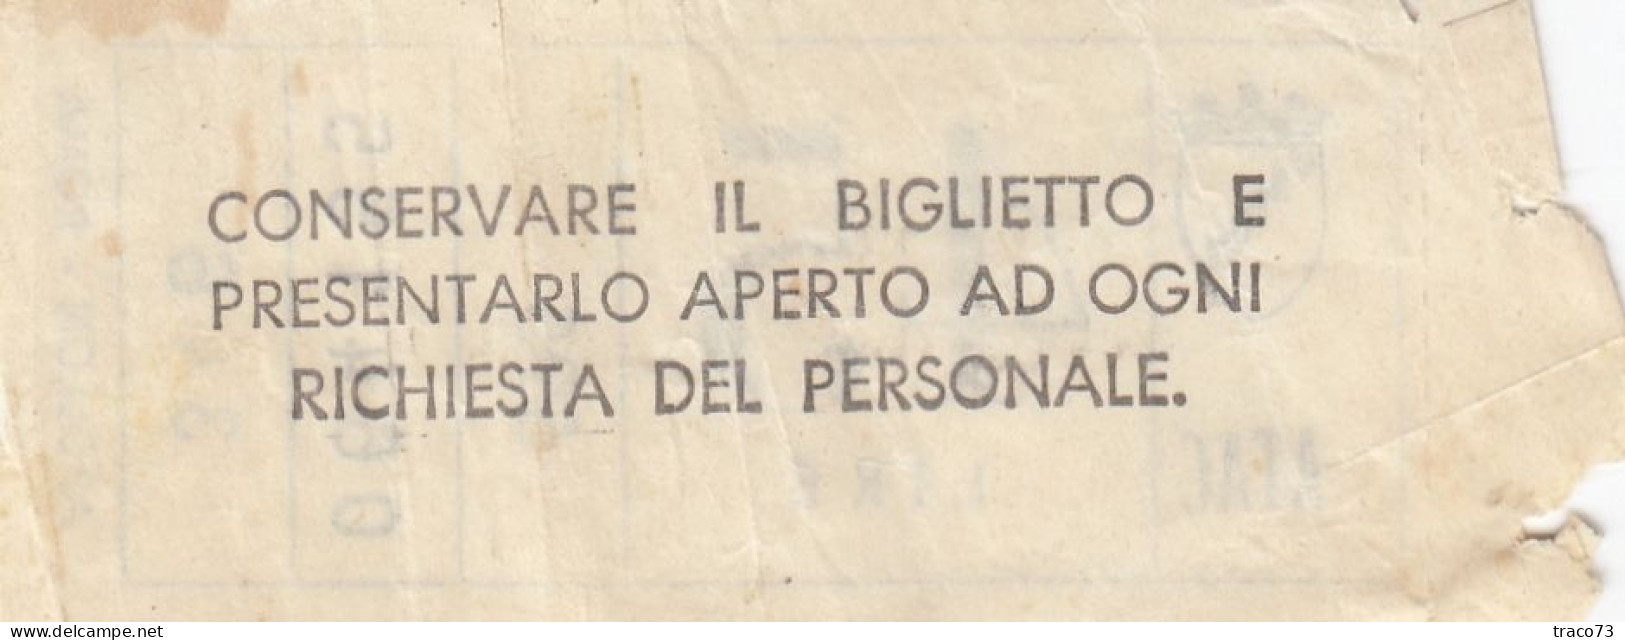 ATAC - ROMA  _ Anni '50-'60 /  Ticket  _ Biglietto Da Lire 45 - Europe